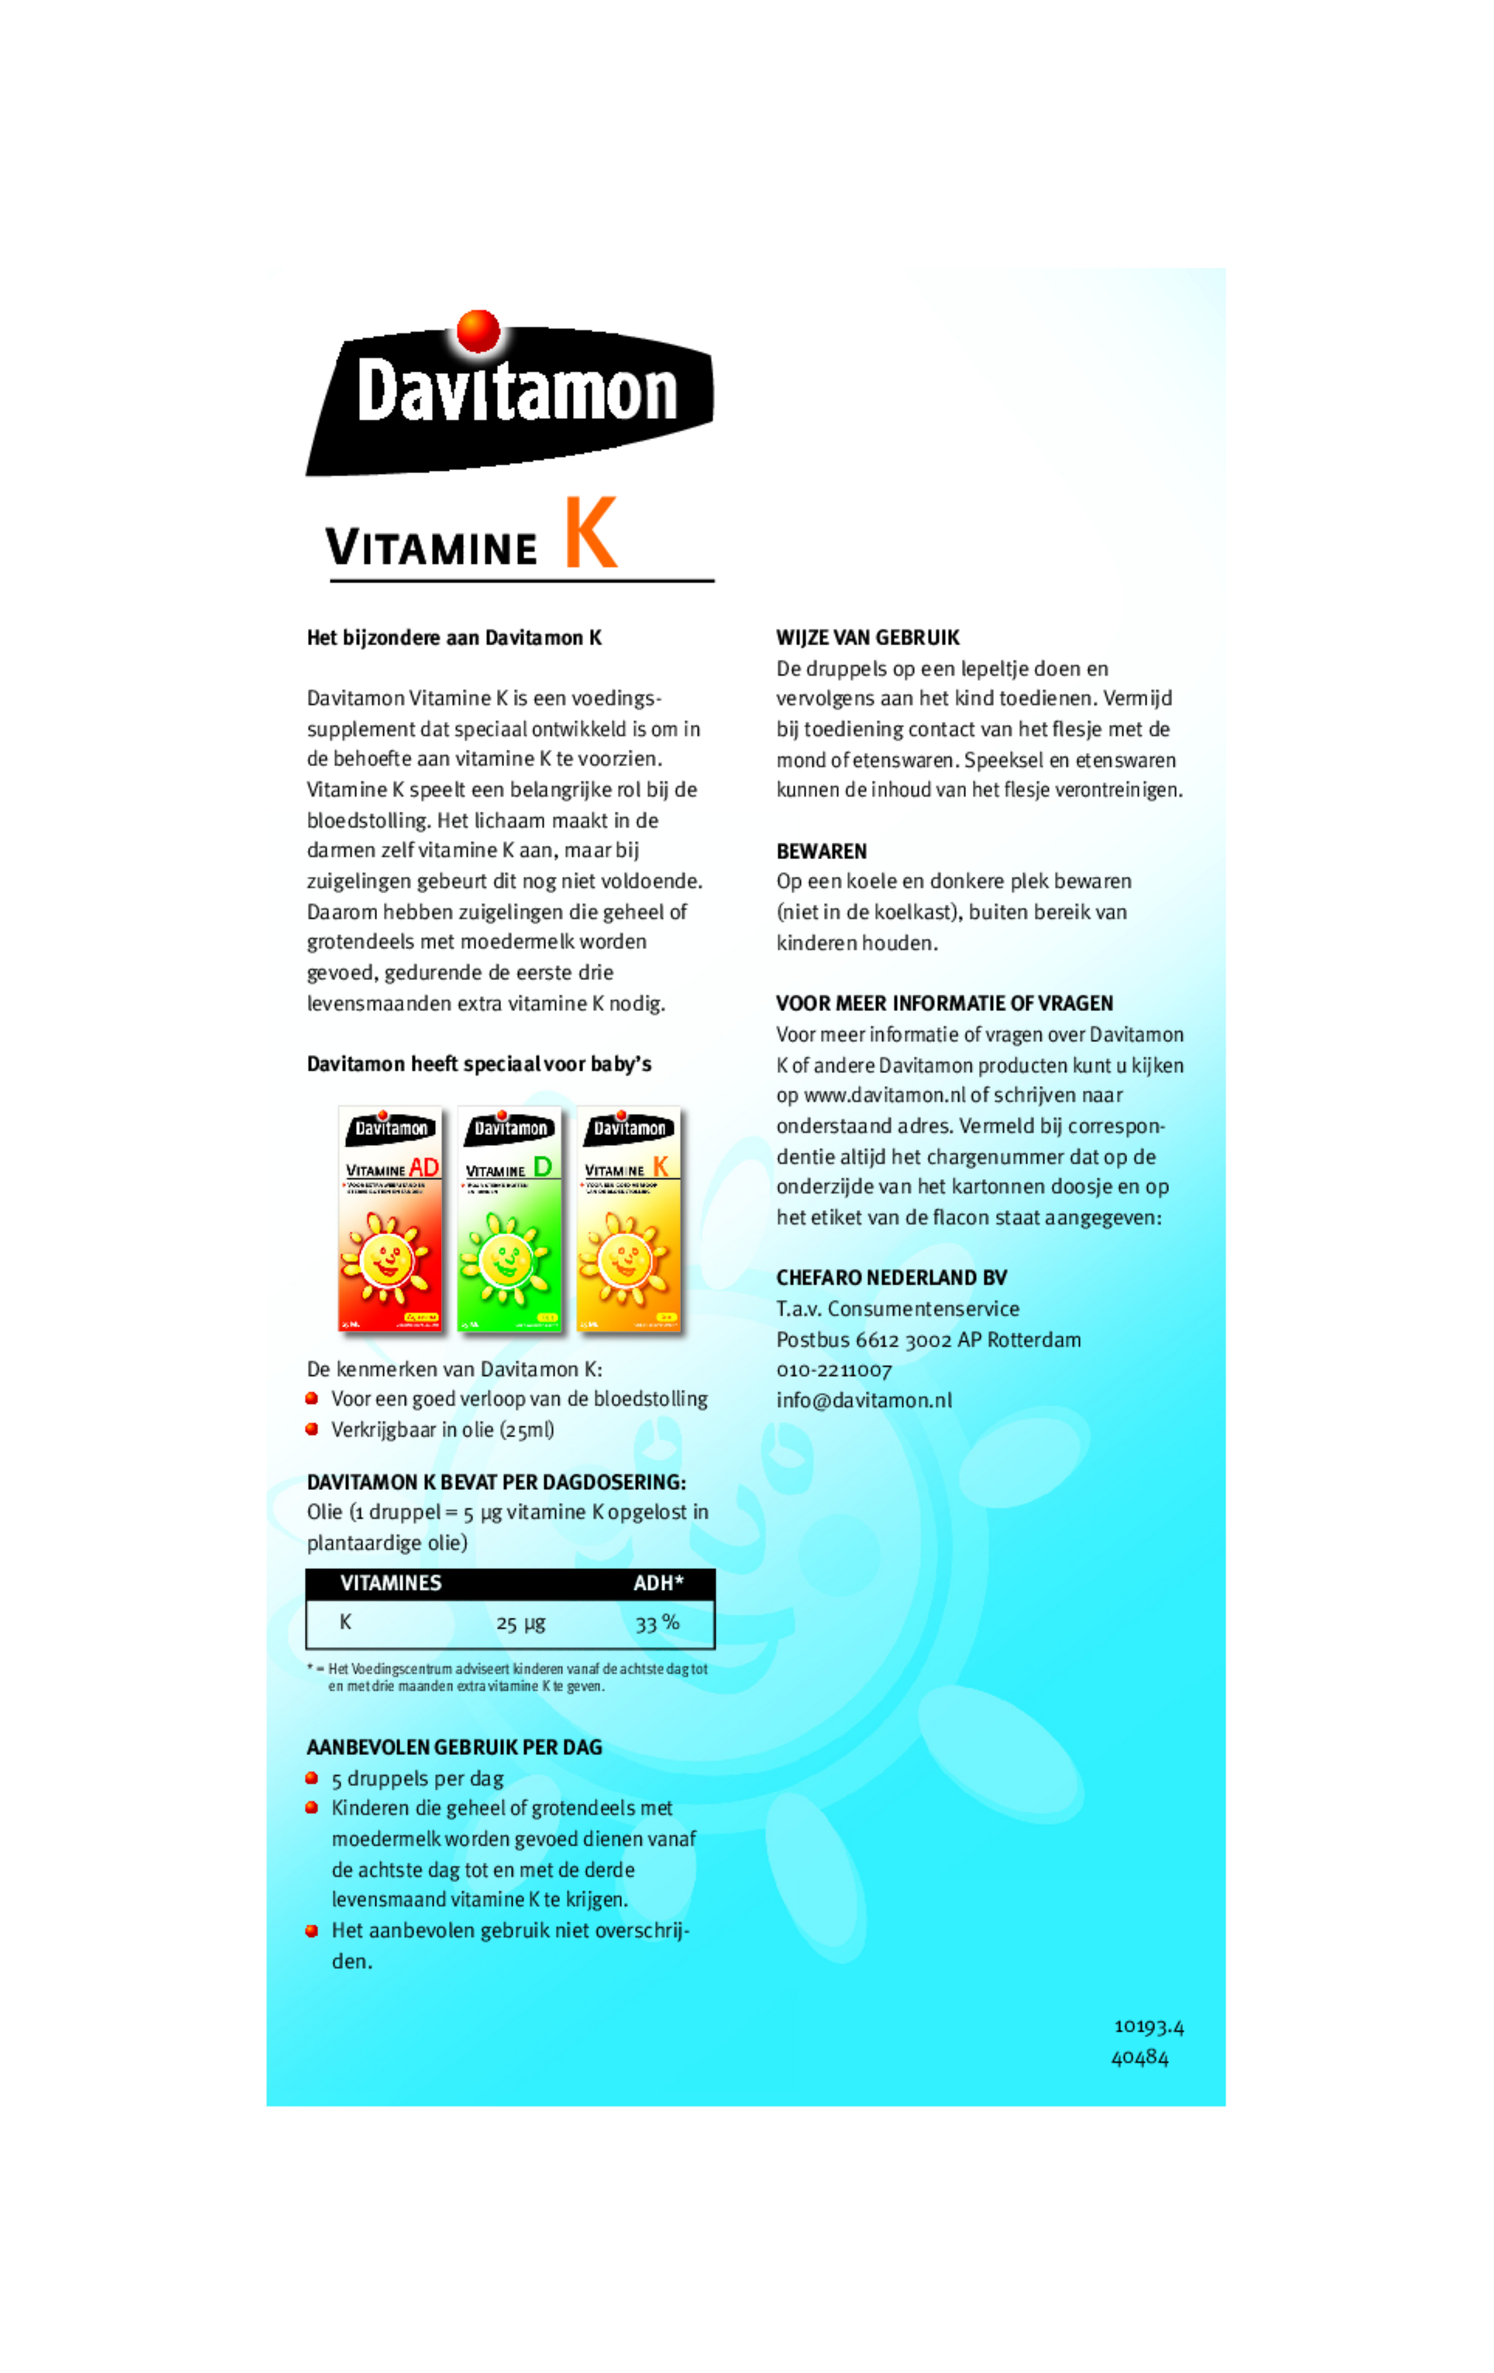 Vitamine K Olie afbeelding van document #1, gebruiksaanwijzing